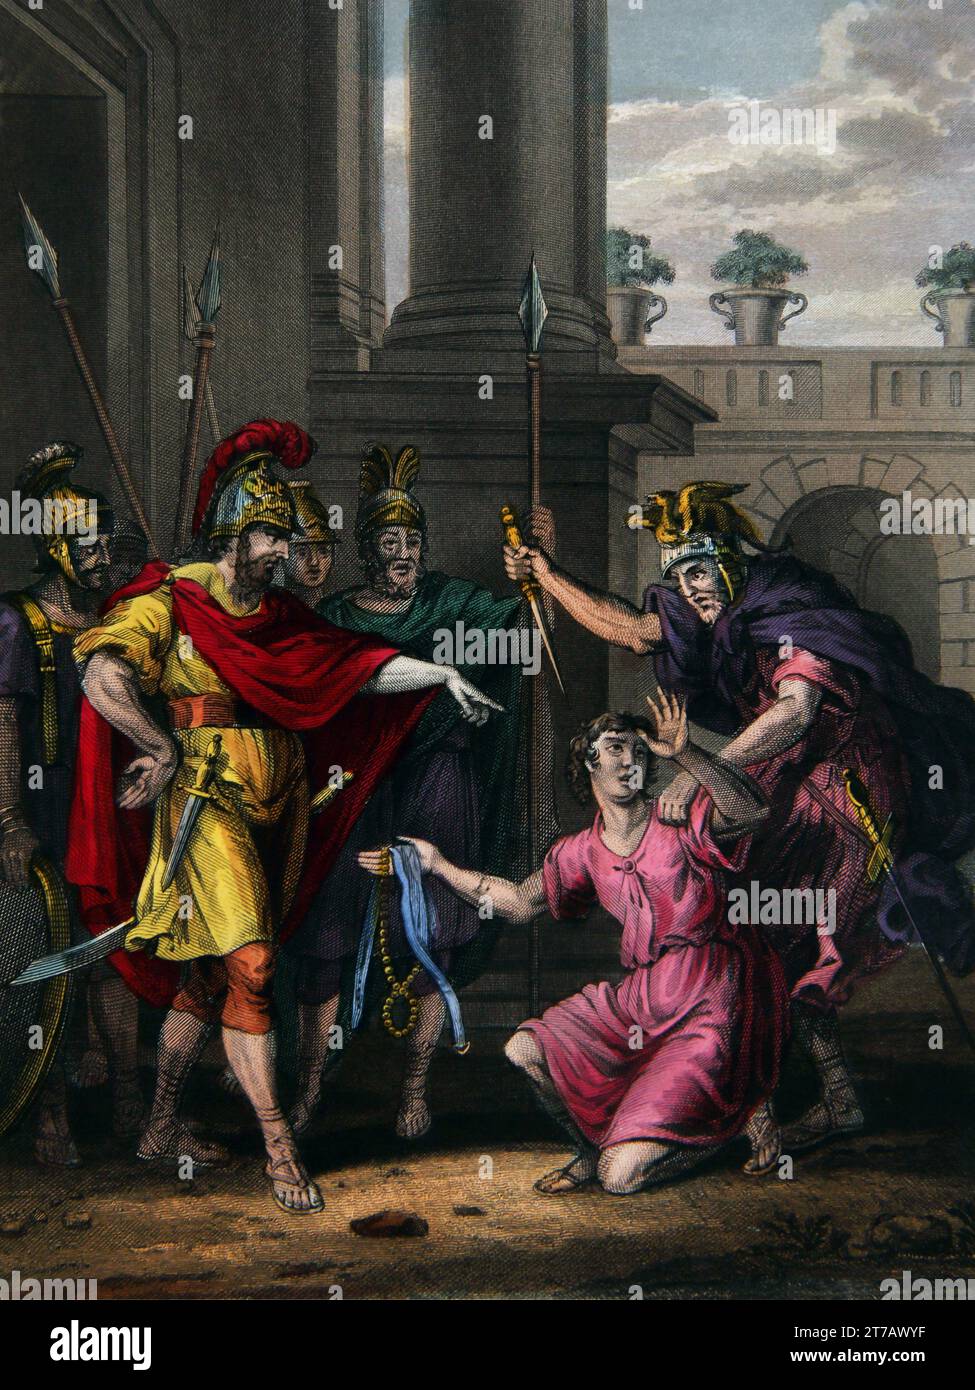 Illustration du mensonge Amalekite tué (Samuel) - le mensonge Amalekite sur le meurtre du roi Saul espérant profiter du roi David de l'auto-Interpr Banque D'Images